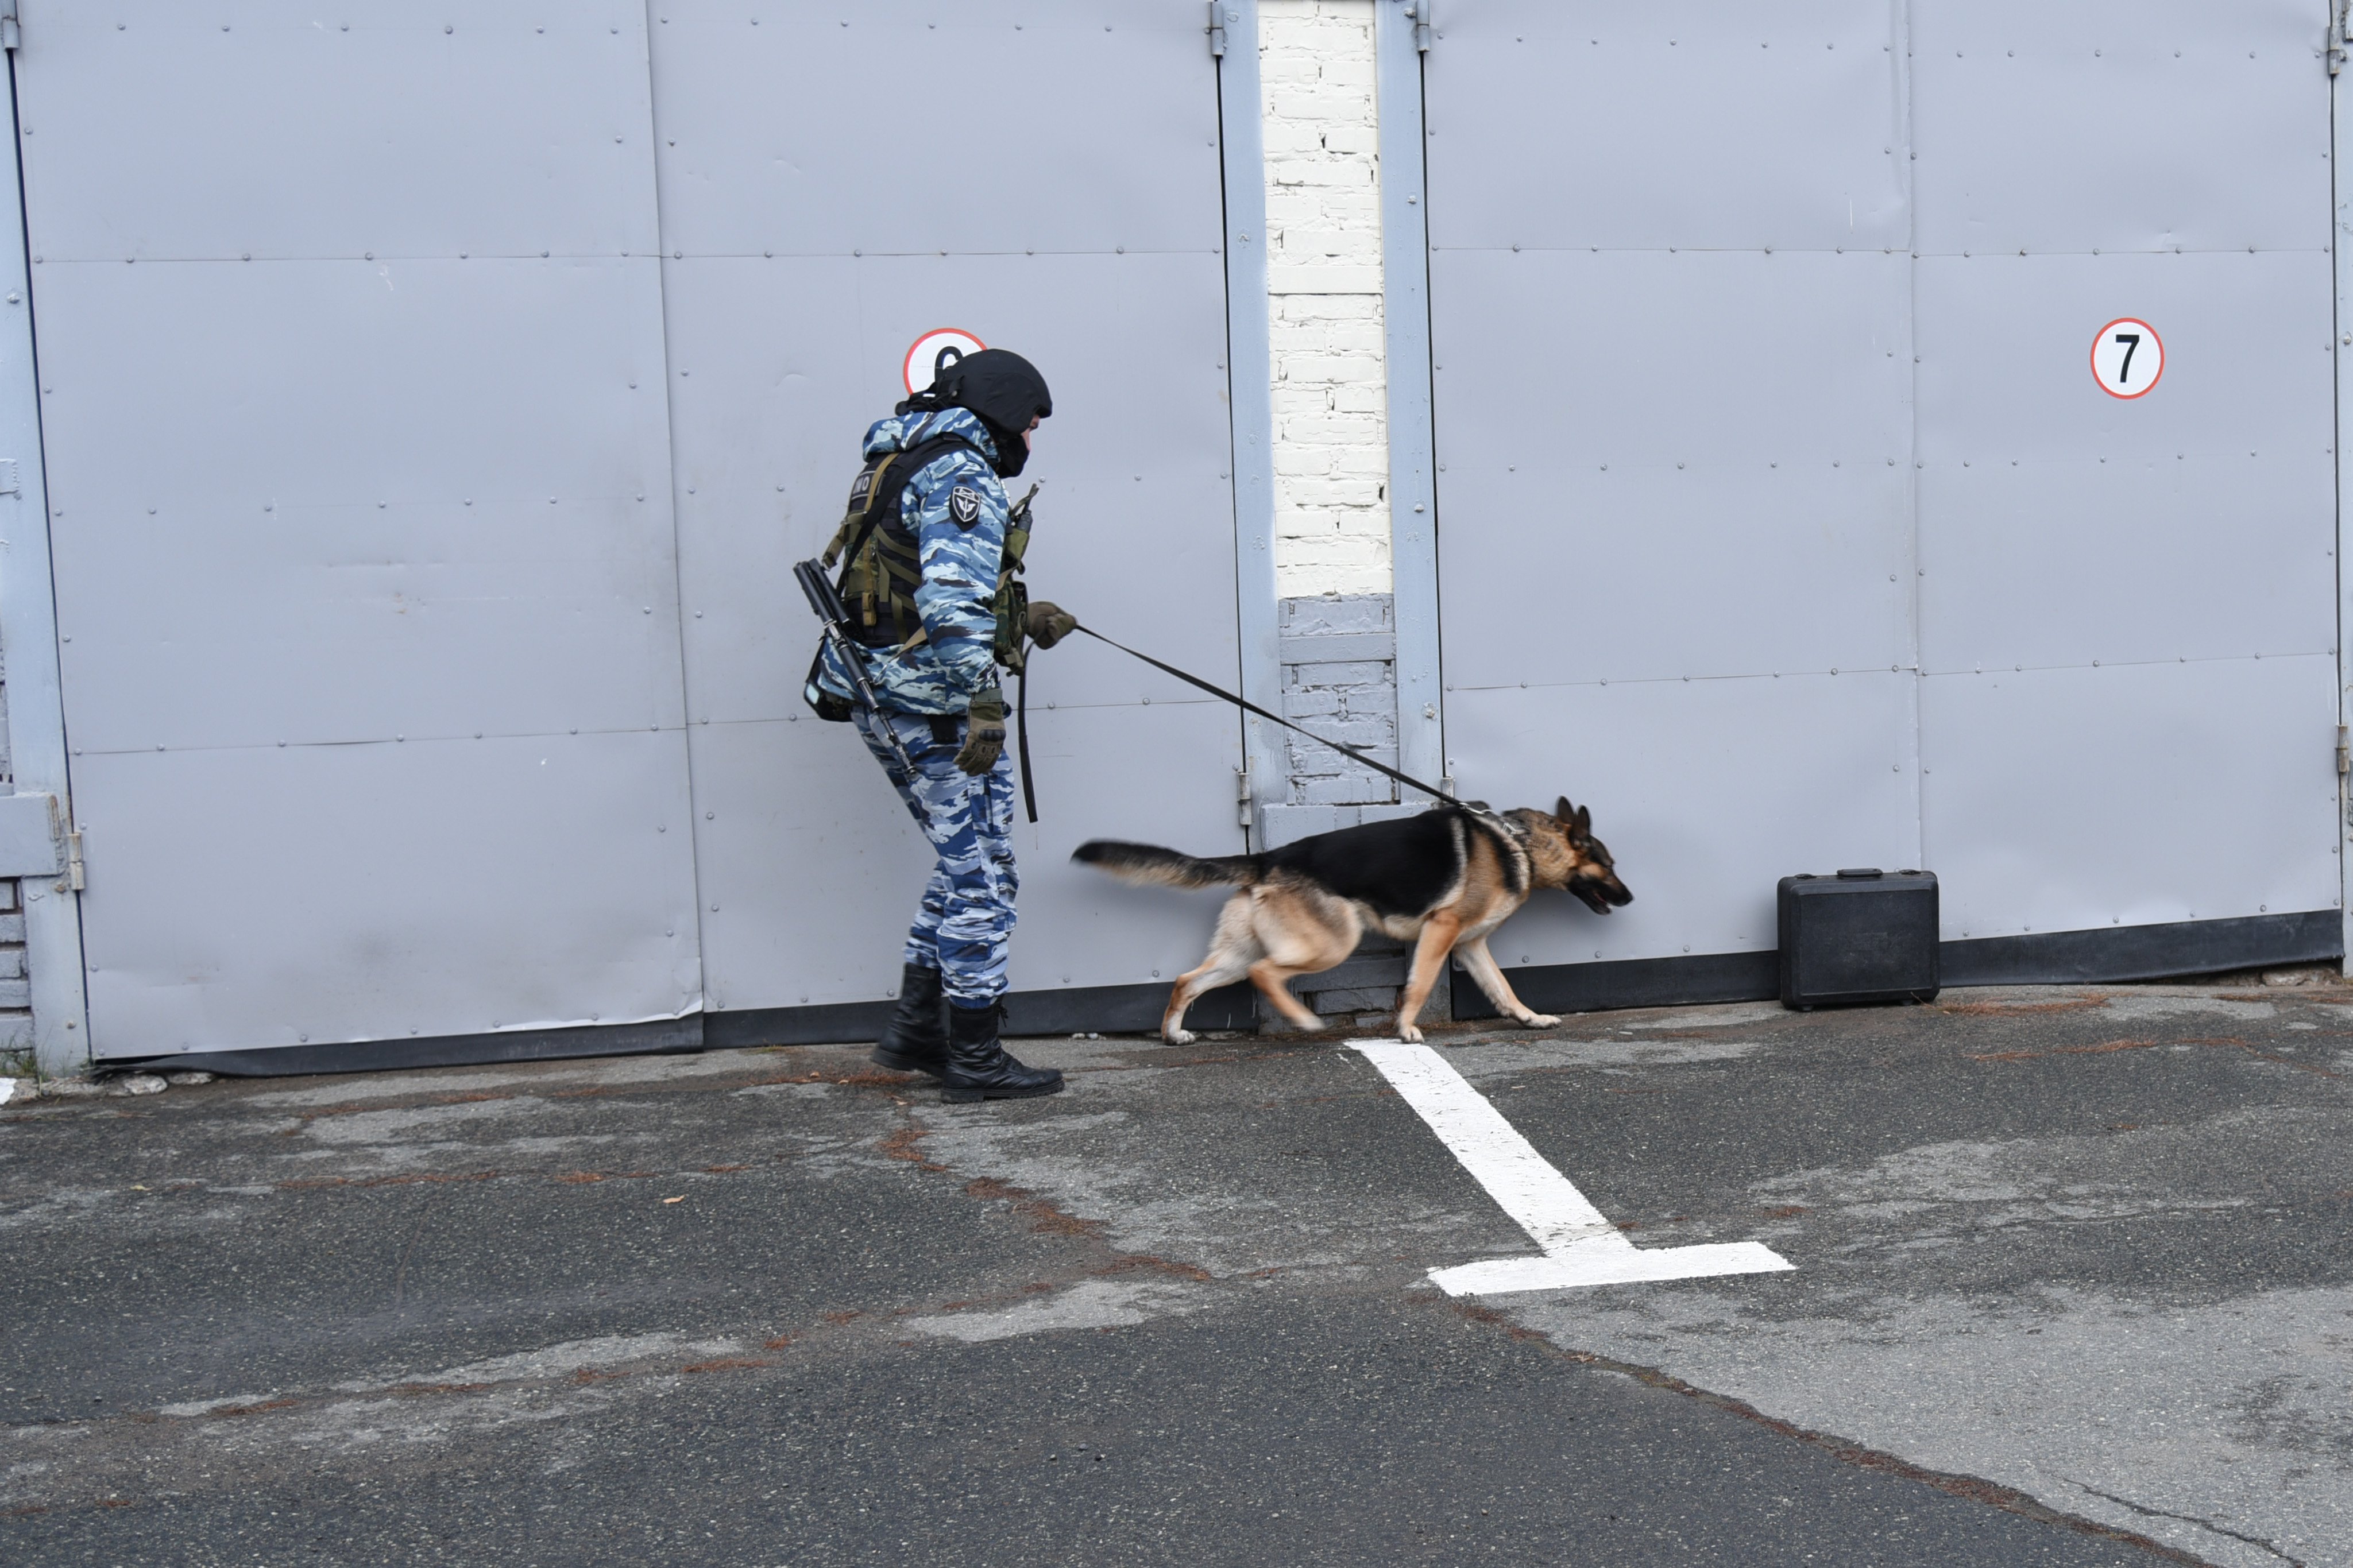 

Антитеррористические учения прошли в Ижевске

